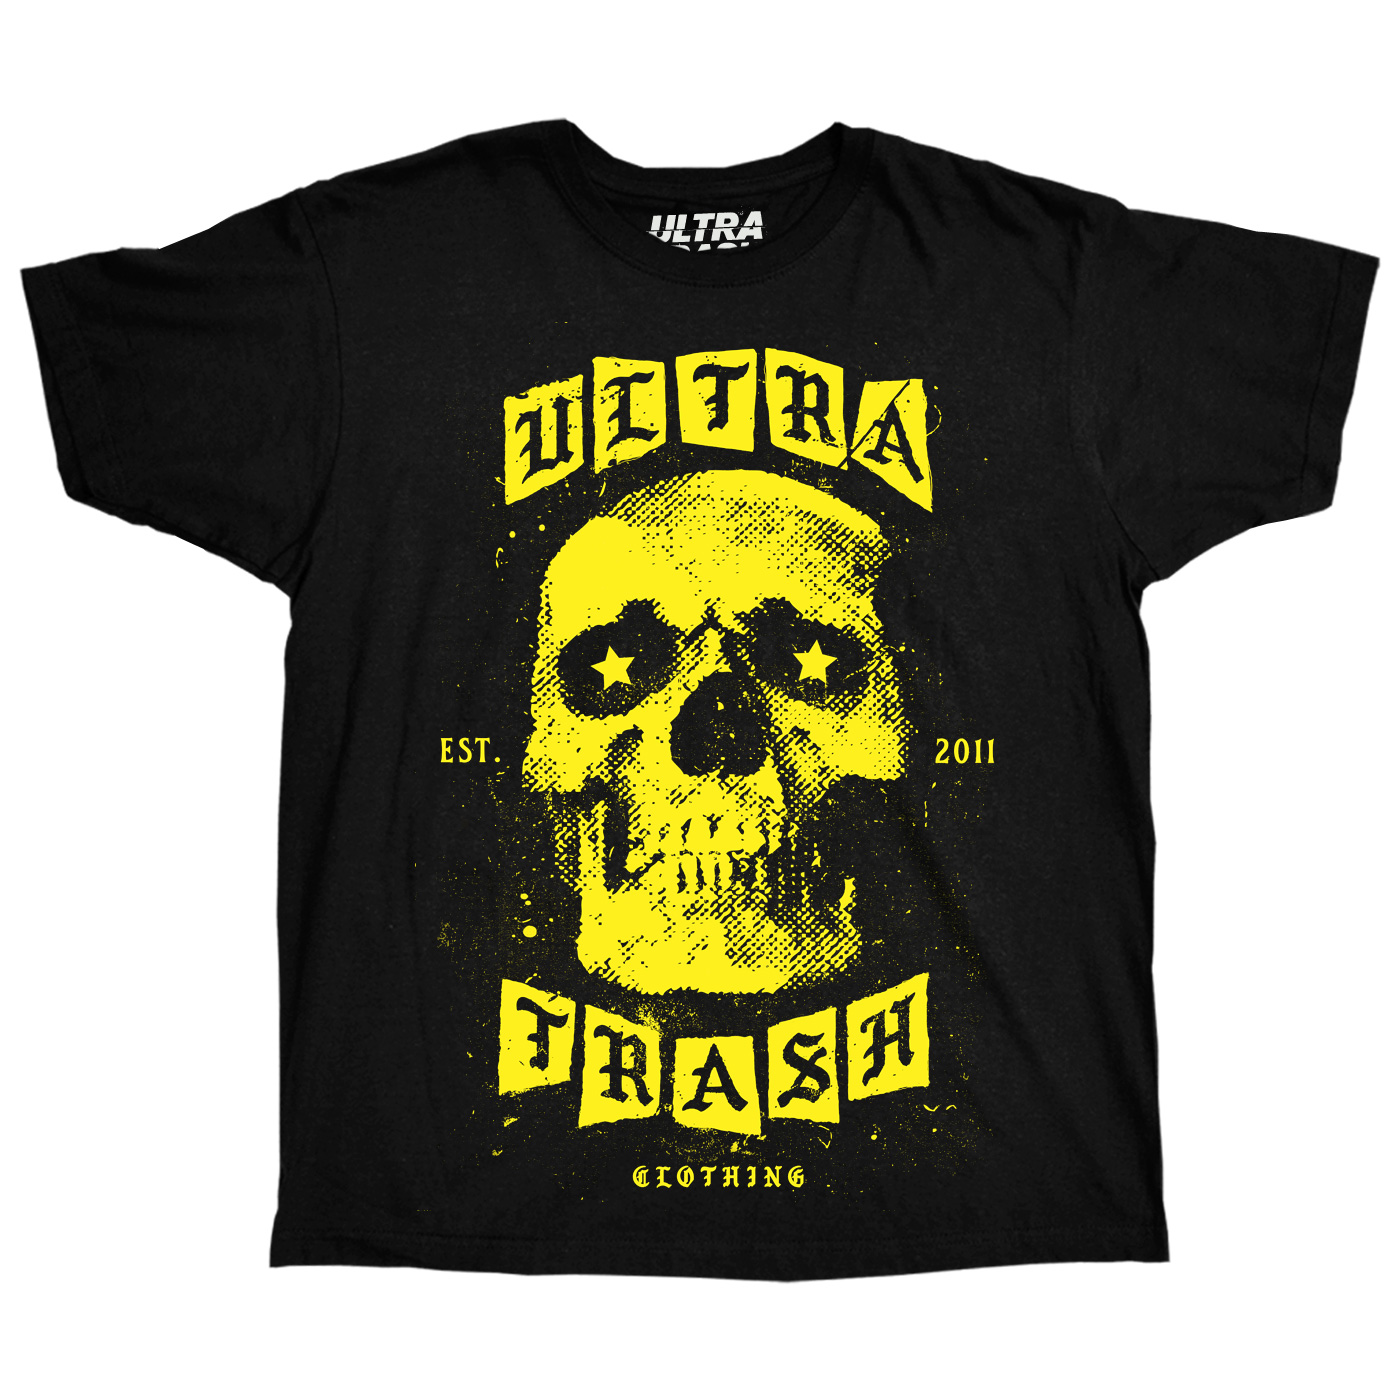 ultra-trash-10-years-anniversary-tshirt-black